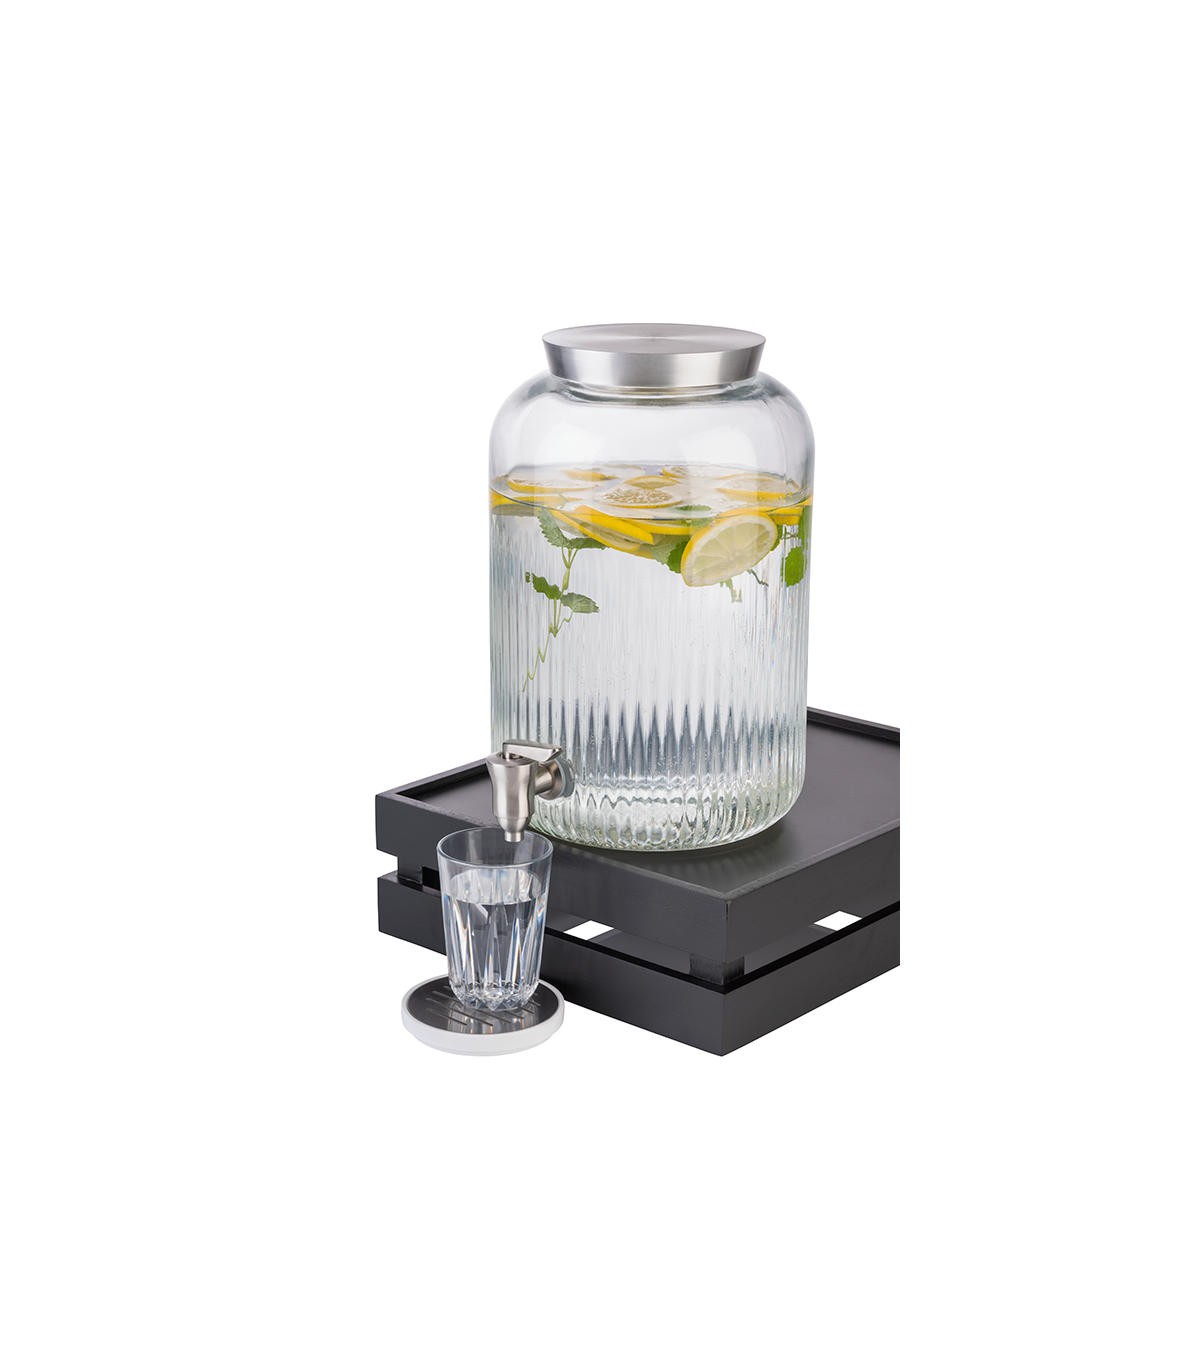 Fontaine distributeur a boisson froide jus (volume : 2 x 8 litres